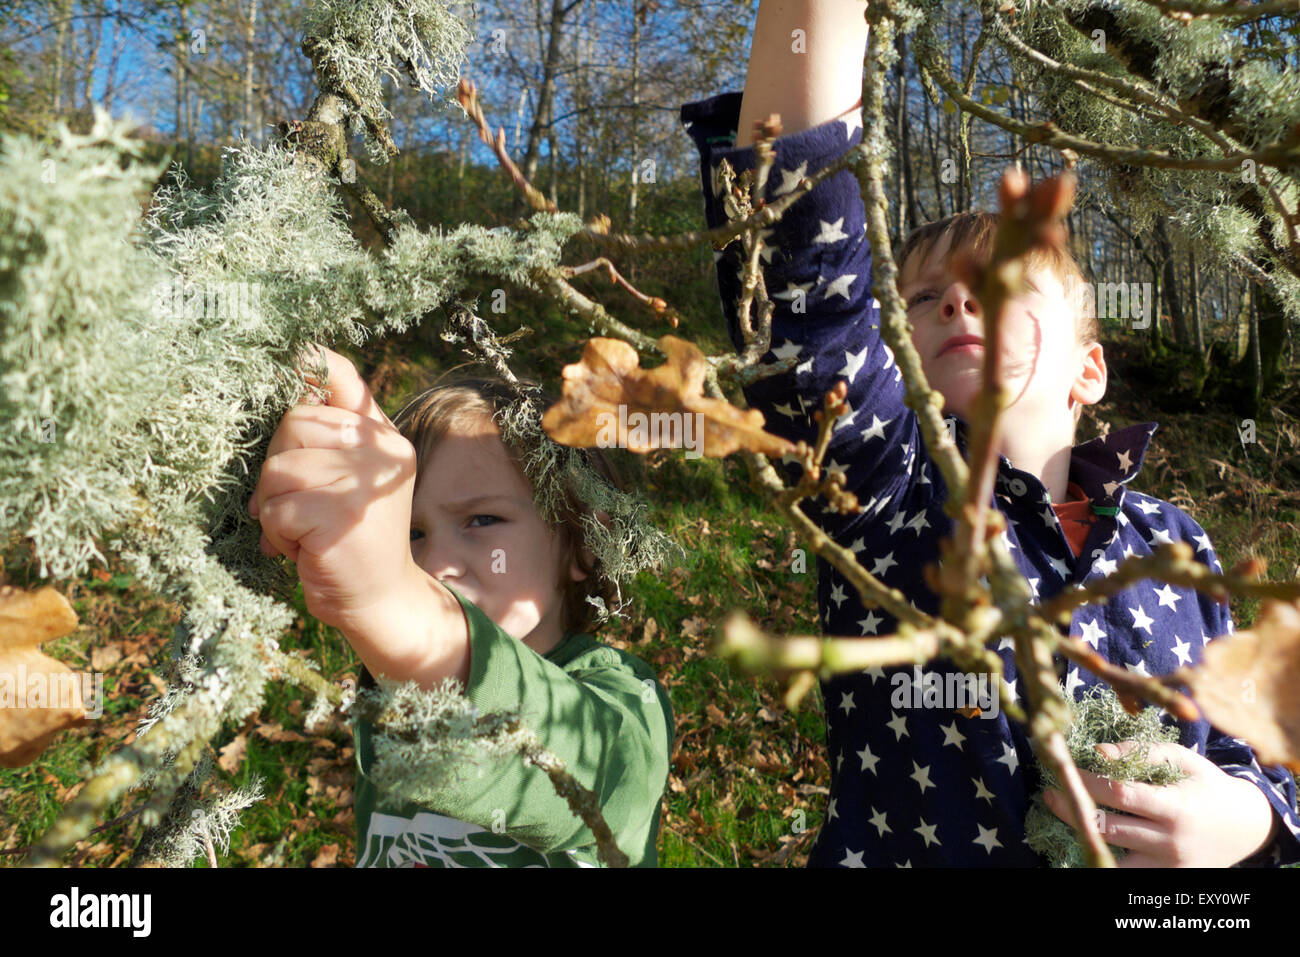 Junge sammeln Ramalina farinacea oder usnea Flechten aus Eiche Zweig Kinder Natur draußen im Herbst ländlichen Carmarthenshire Wales Großbritannien KATHY DEWITT Stockfoto